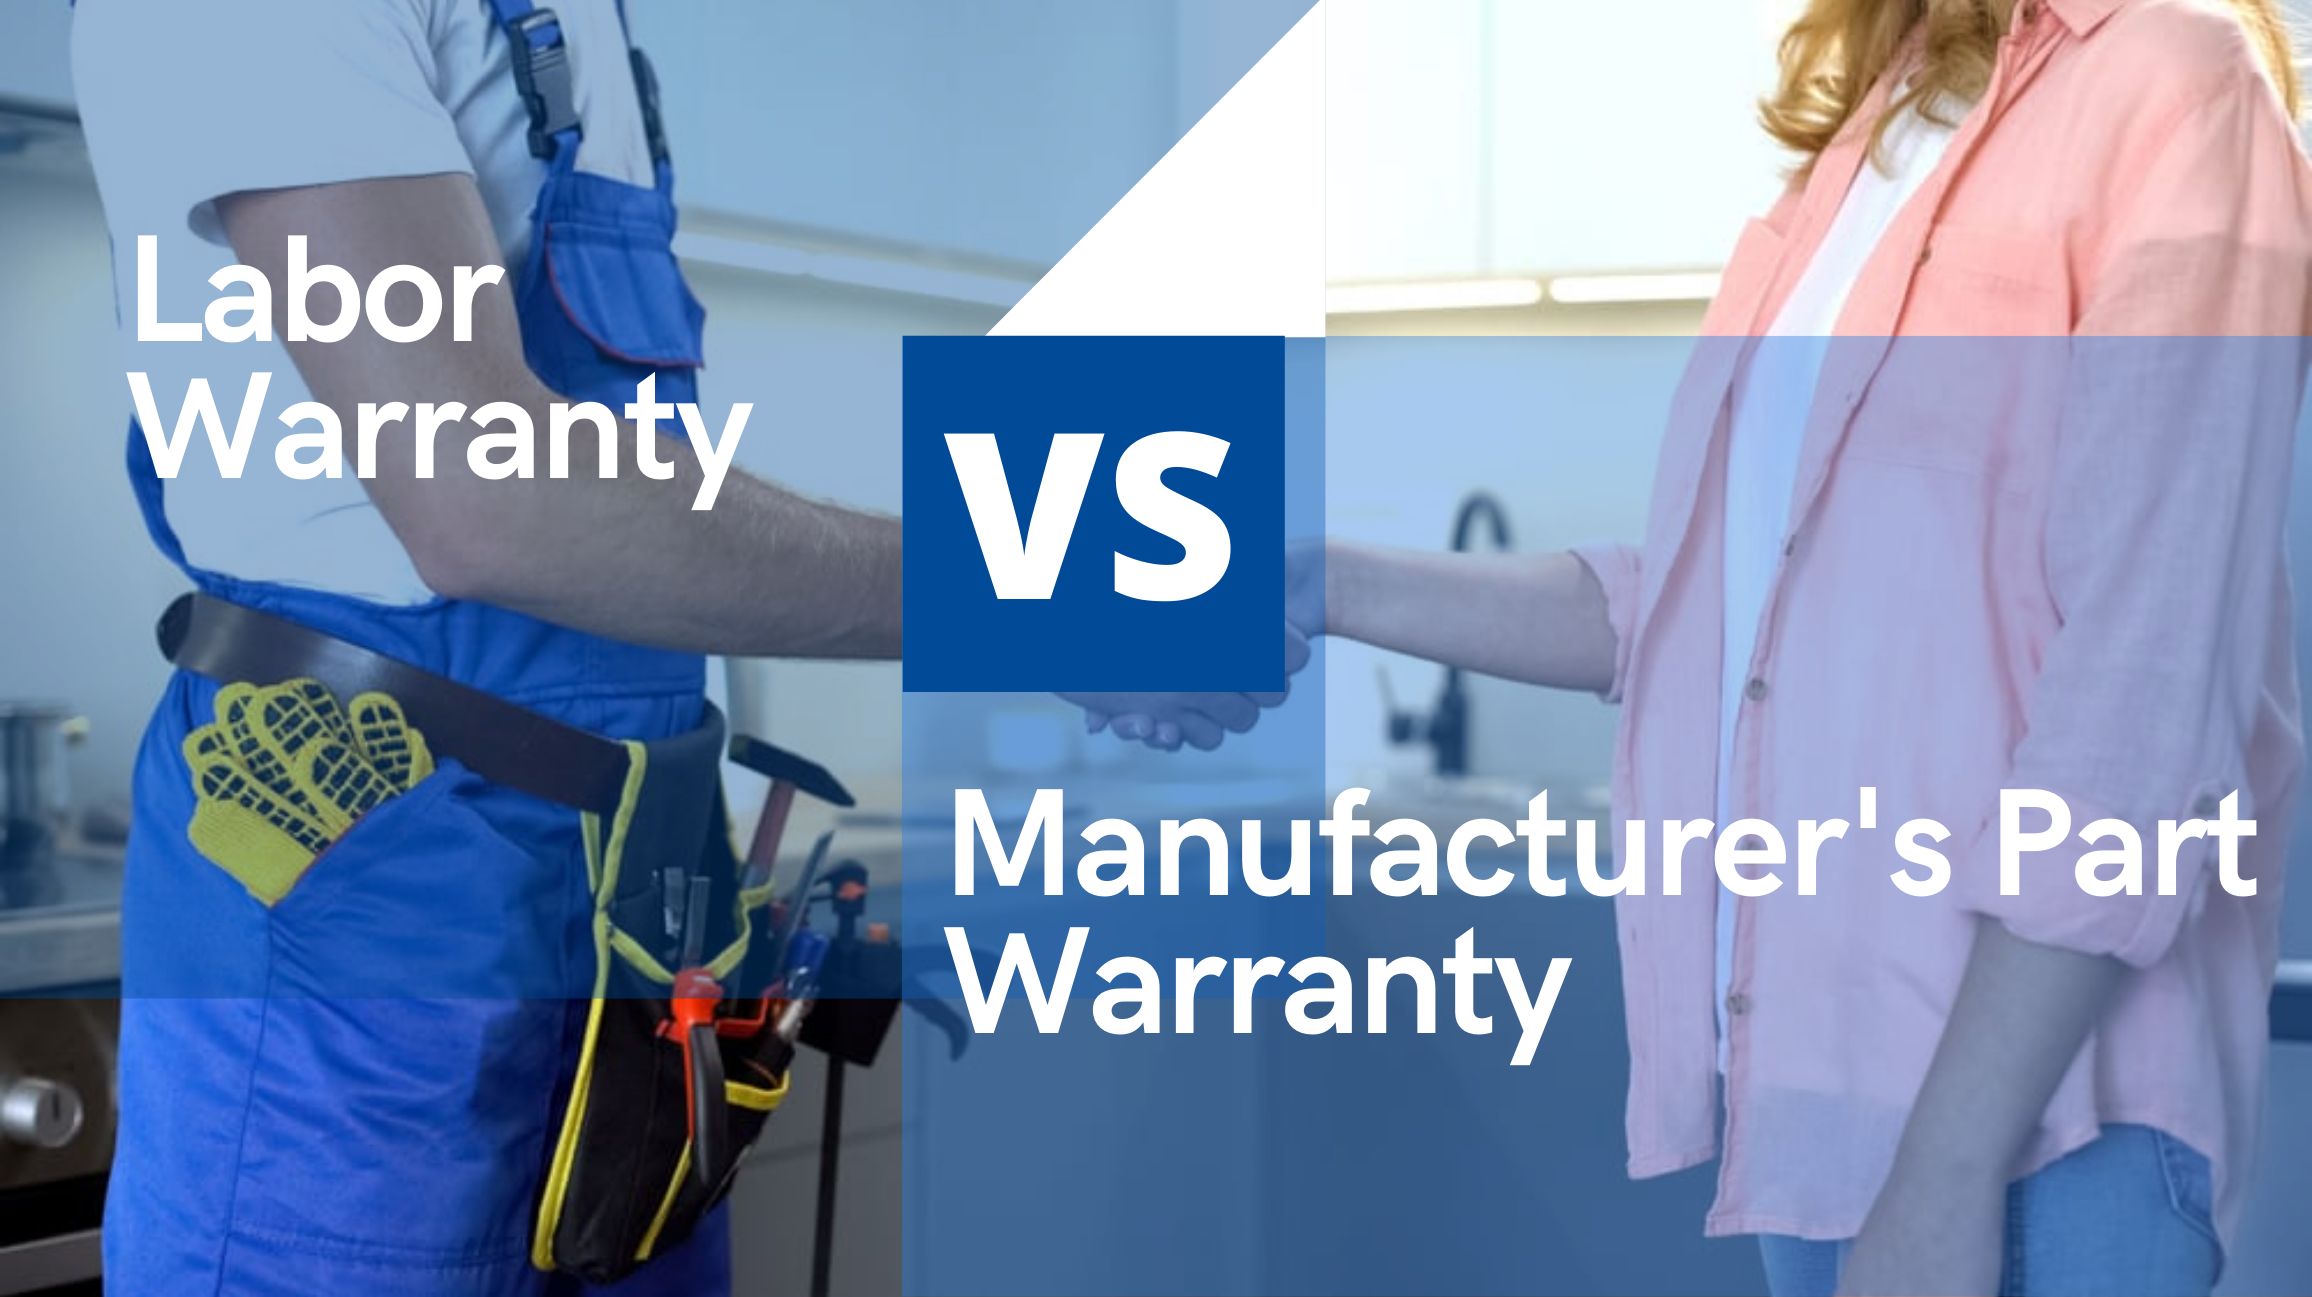 Labour warranty vs manufacturer's part warranty